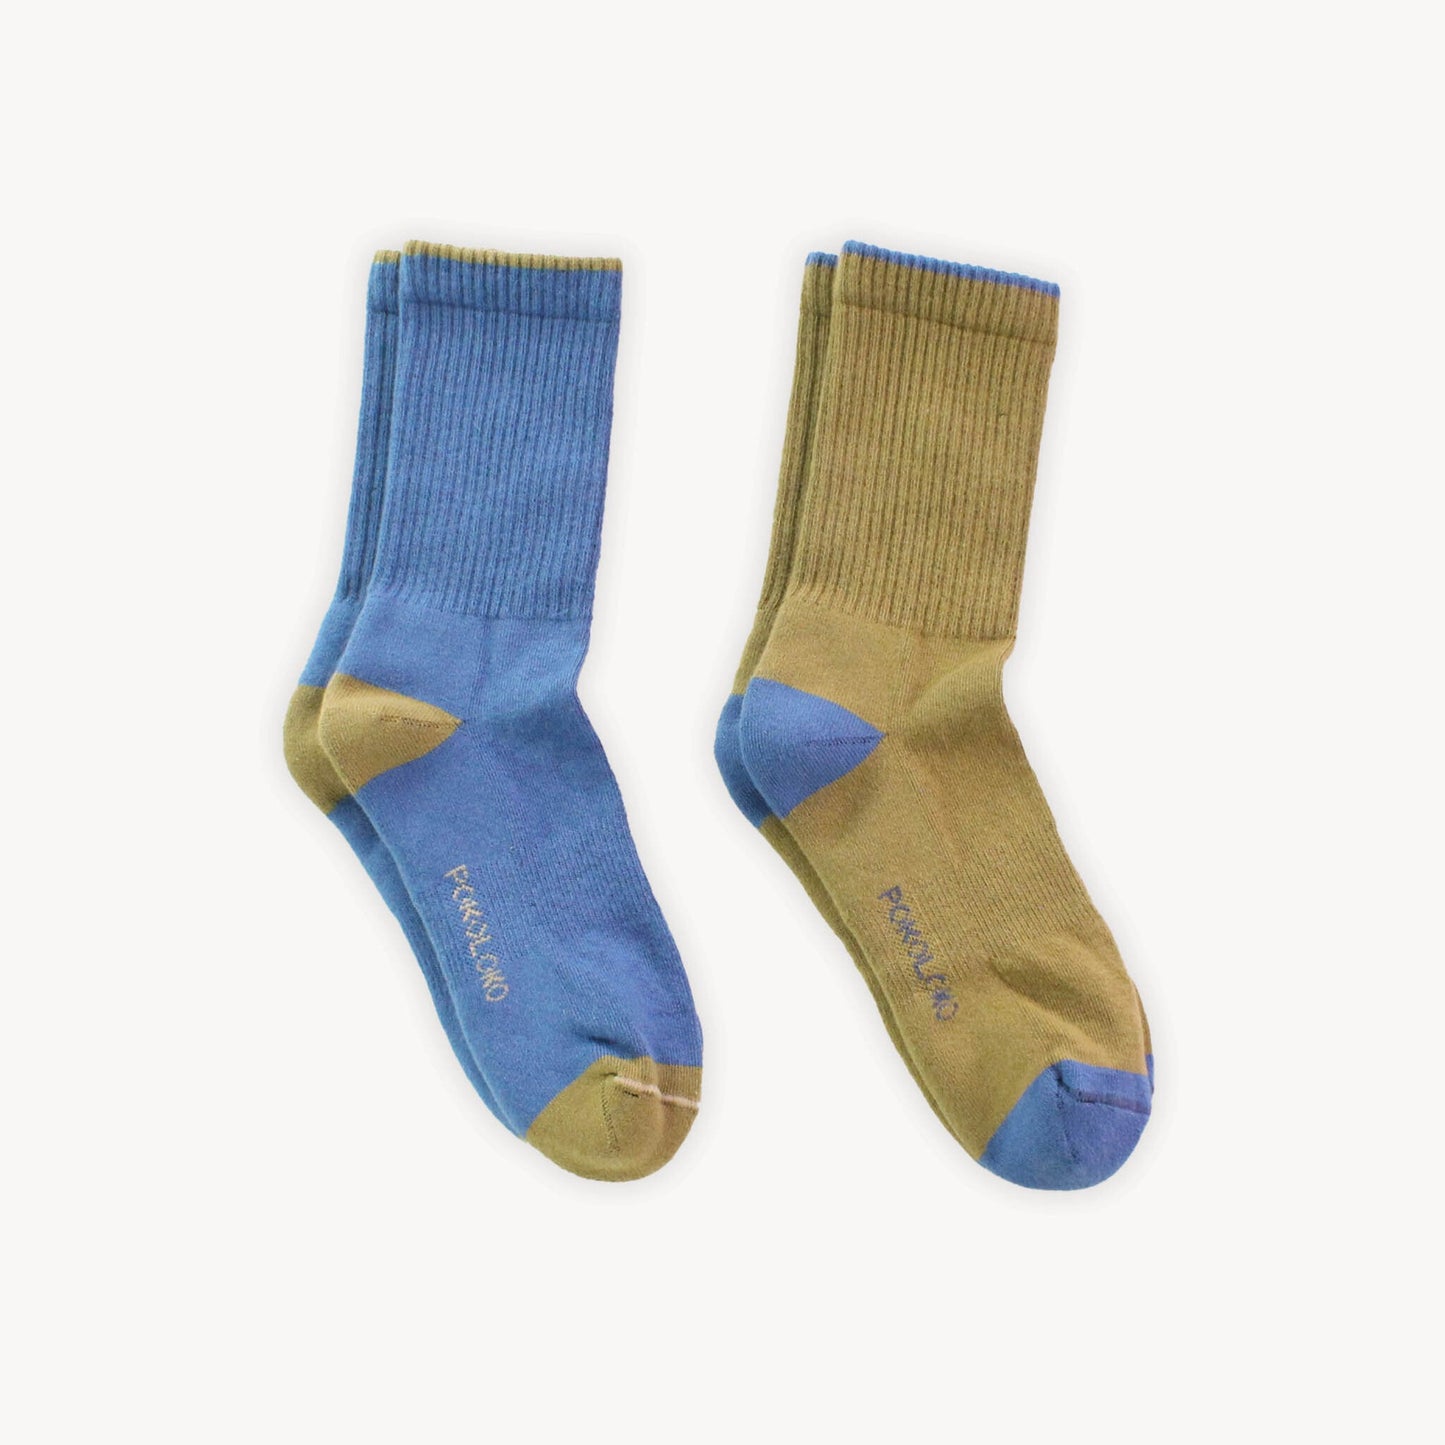 Pima Cotton Heel Toe Socks - 2 Pack